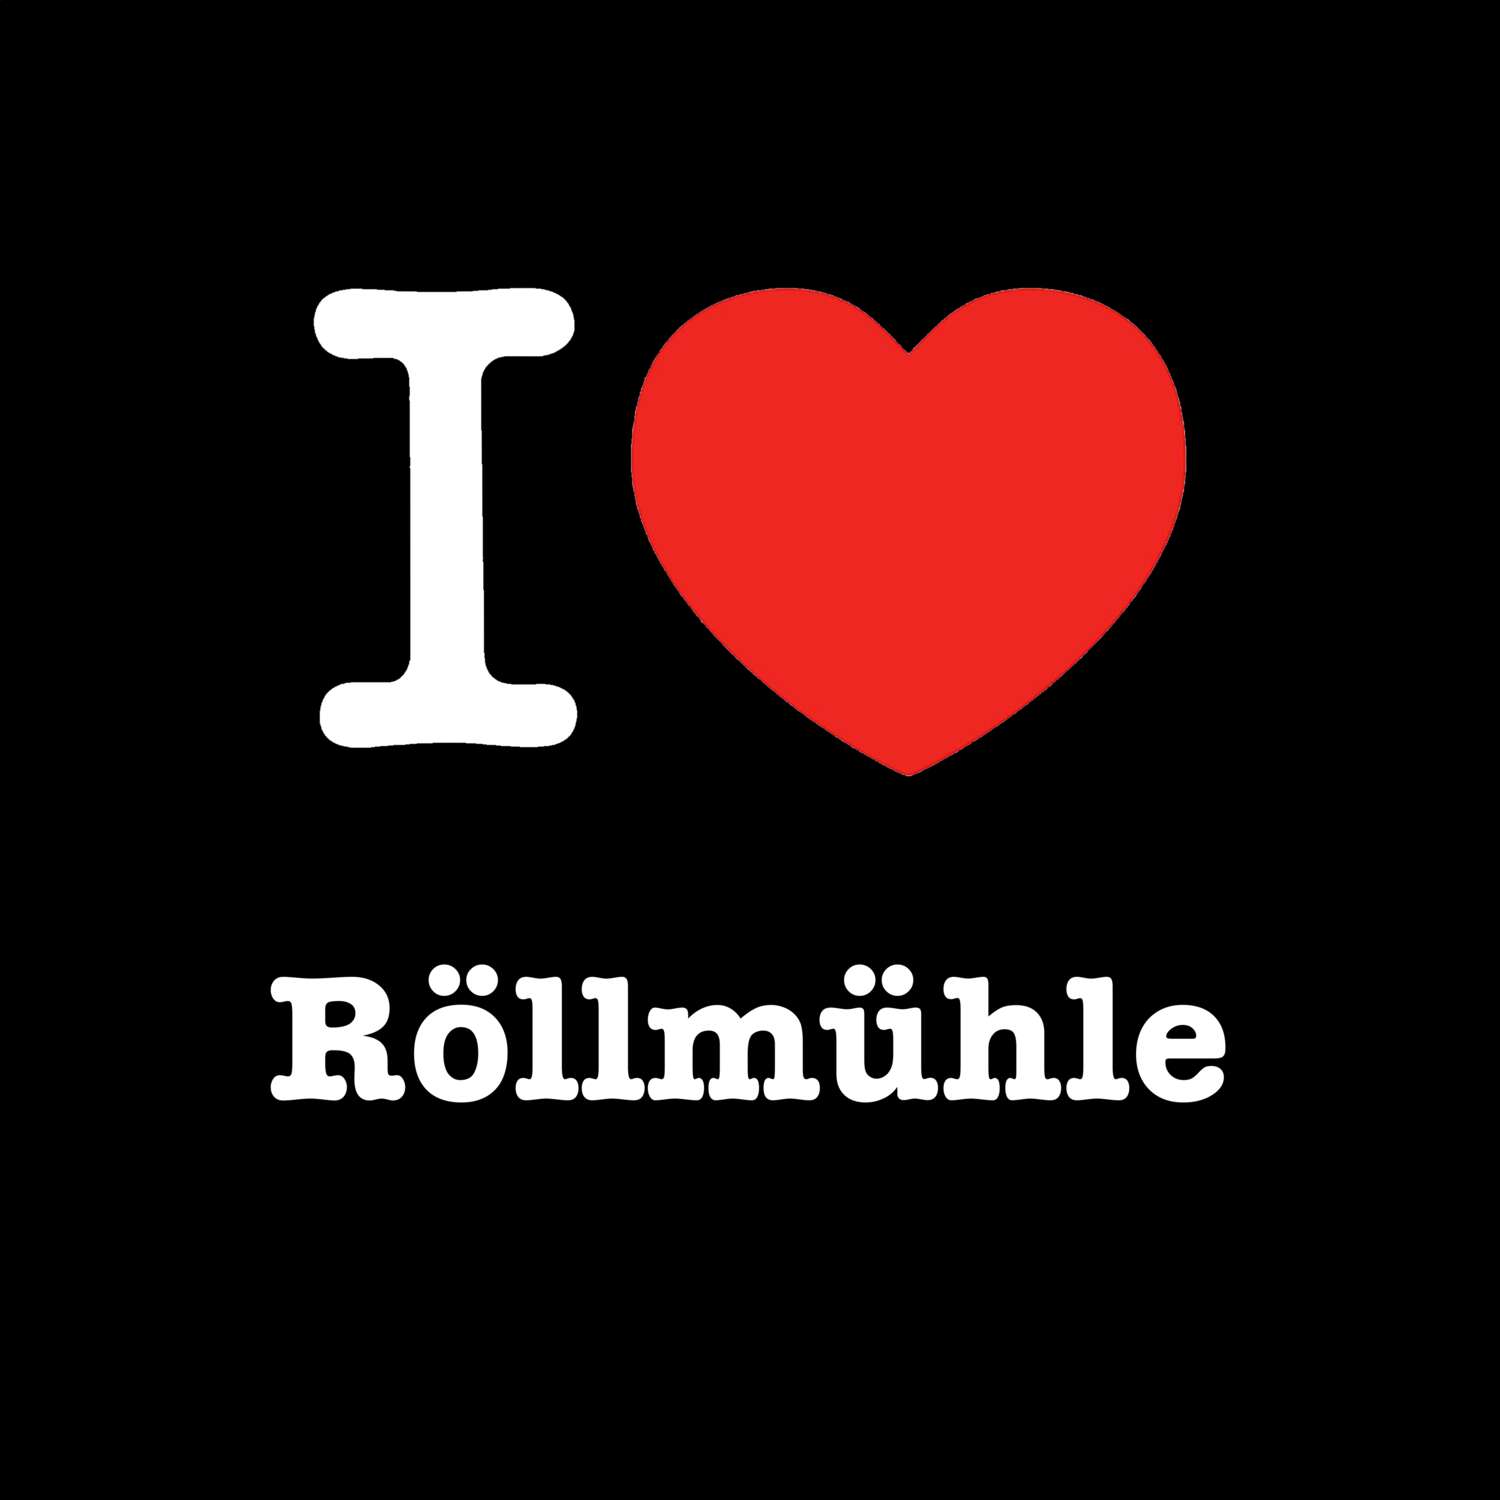 Röllmühle T-Shirt »I love«